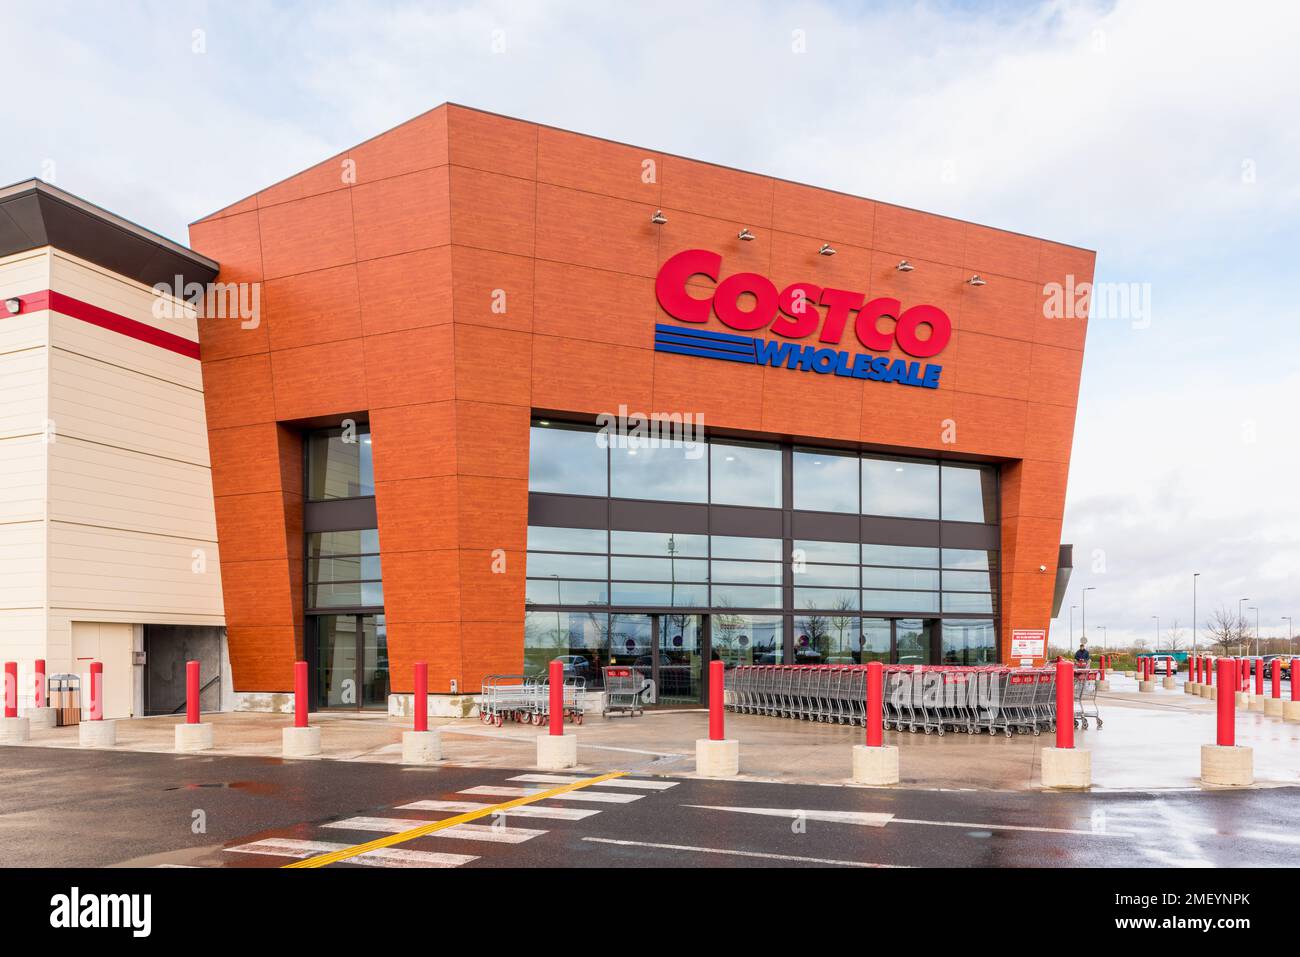 Costco Branche in Frankreich in Villebon-sur-Yvette, nahe Paris. Costco ist ein amerikanisches multinationales Großhandelsunternehmen, das nur Mitglieder hat Stockfoto